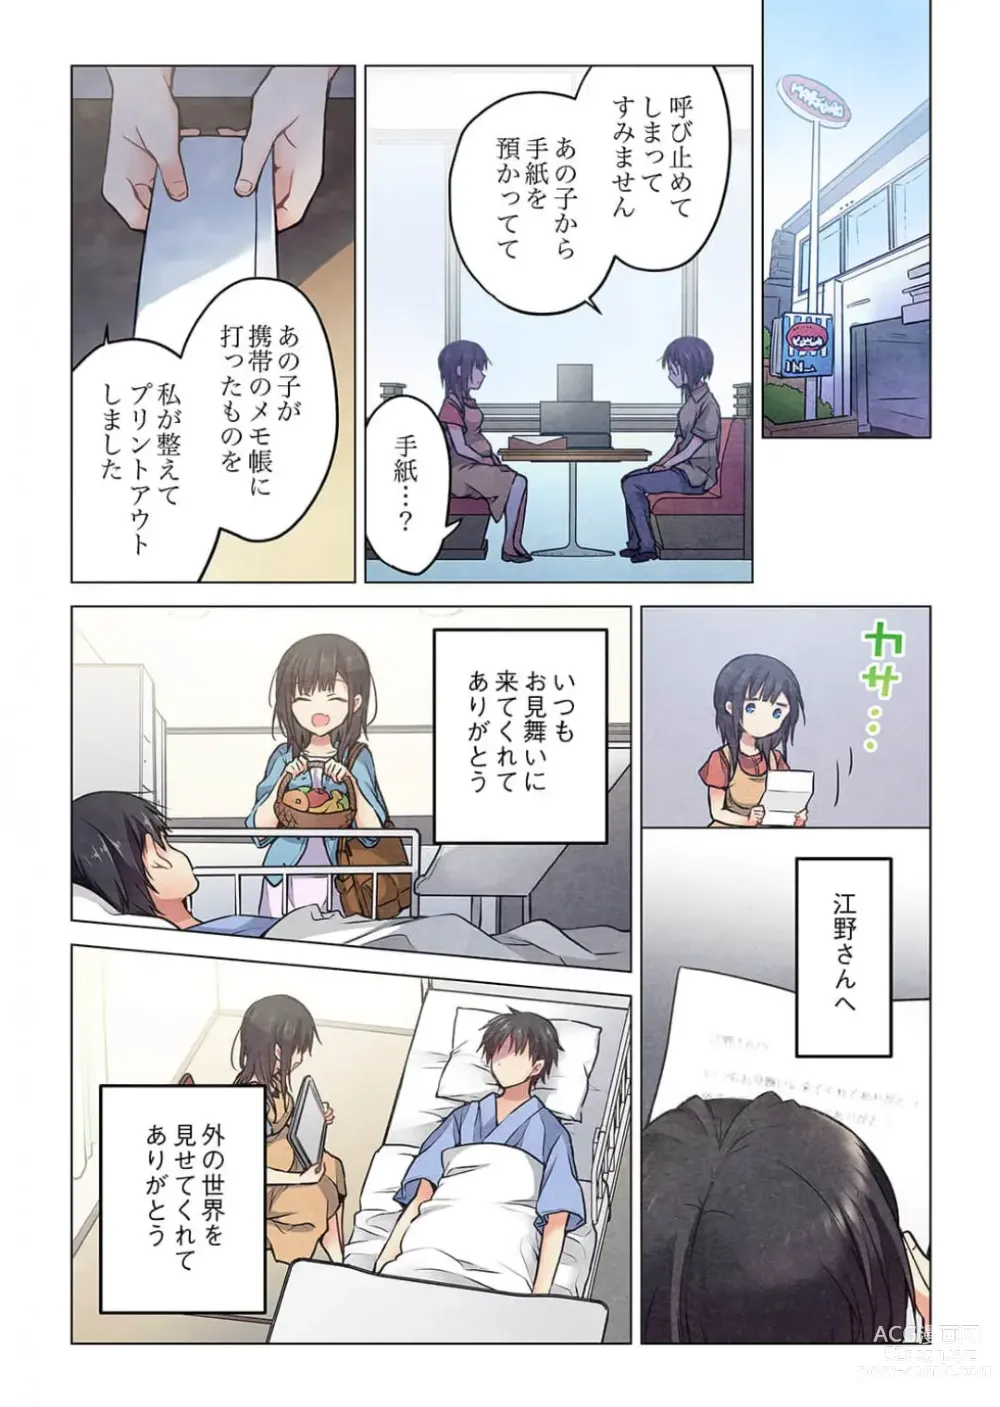 Page 6 of manga Kimi ga Sore o Ai to Yonde mo - Even if you call it love 40